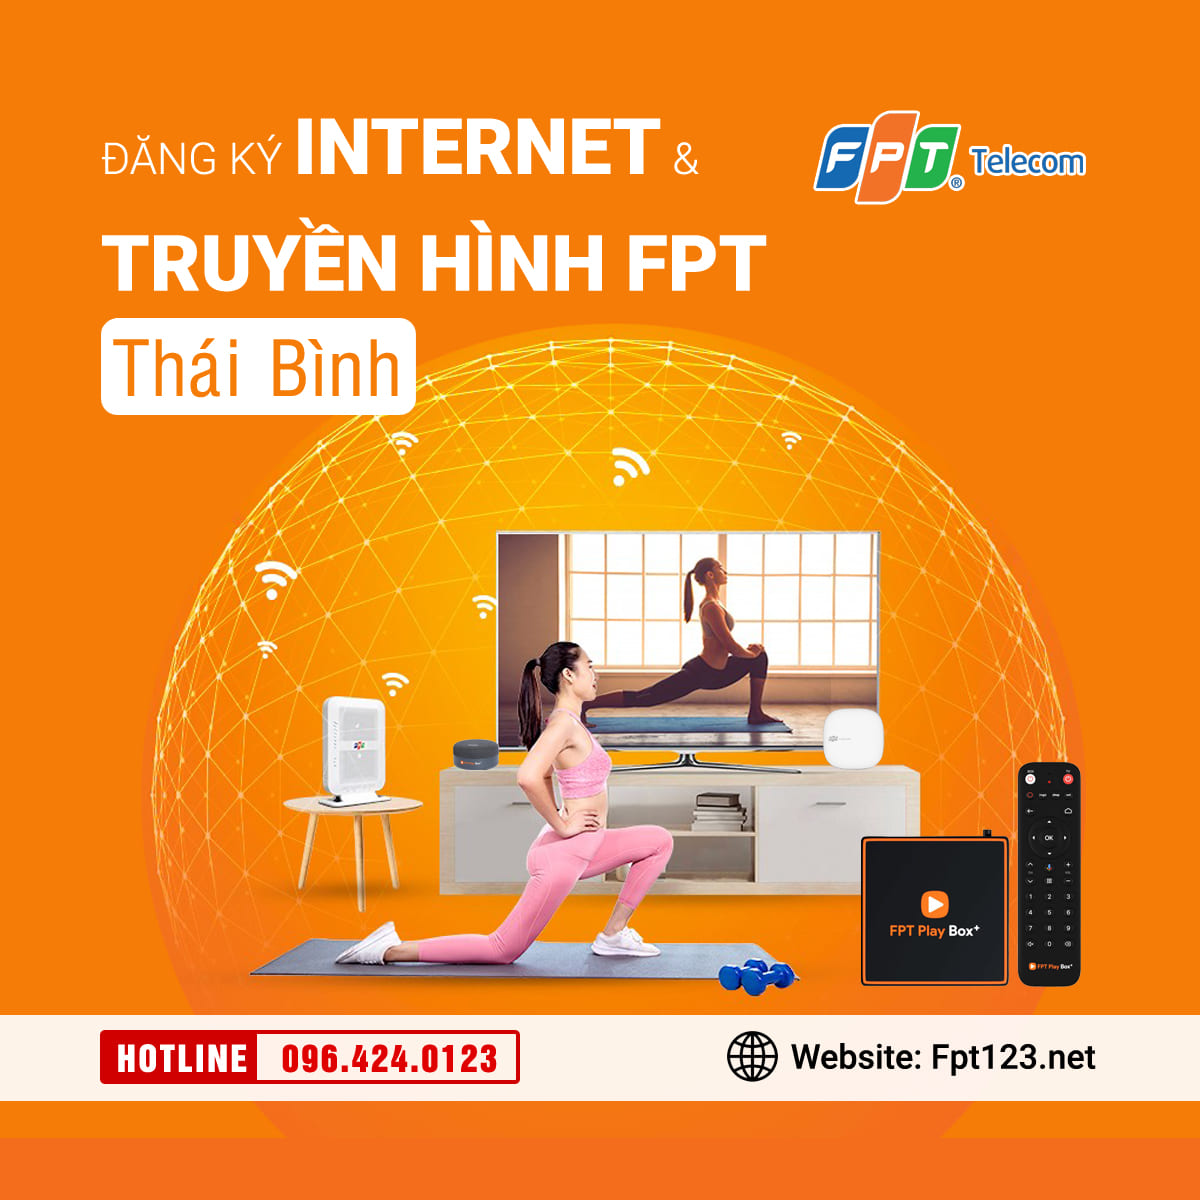 Đăng ký internet và truyền hình FPT Thái Bình